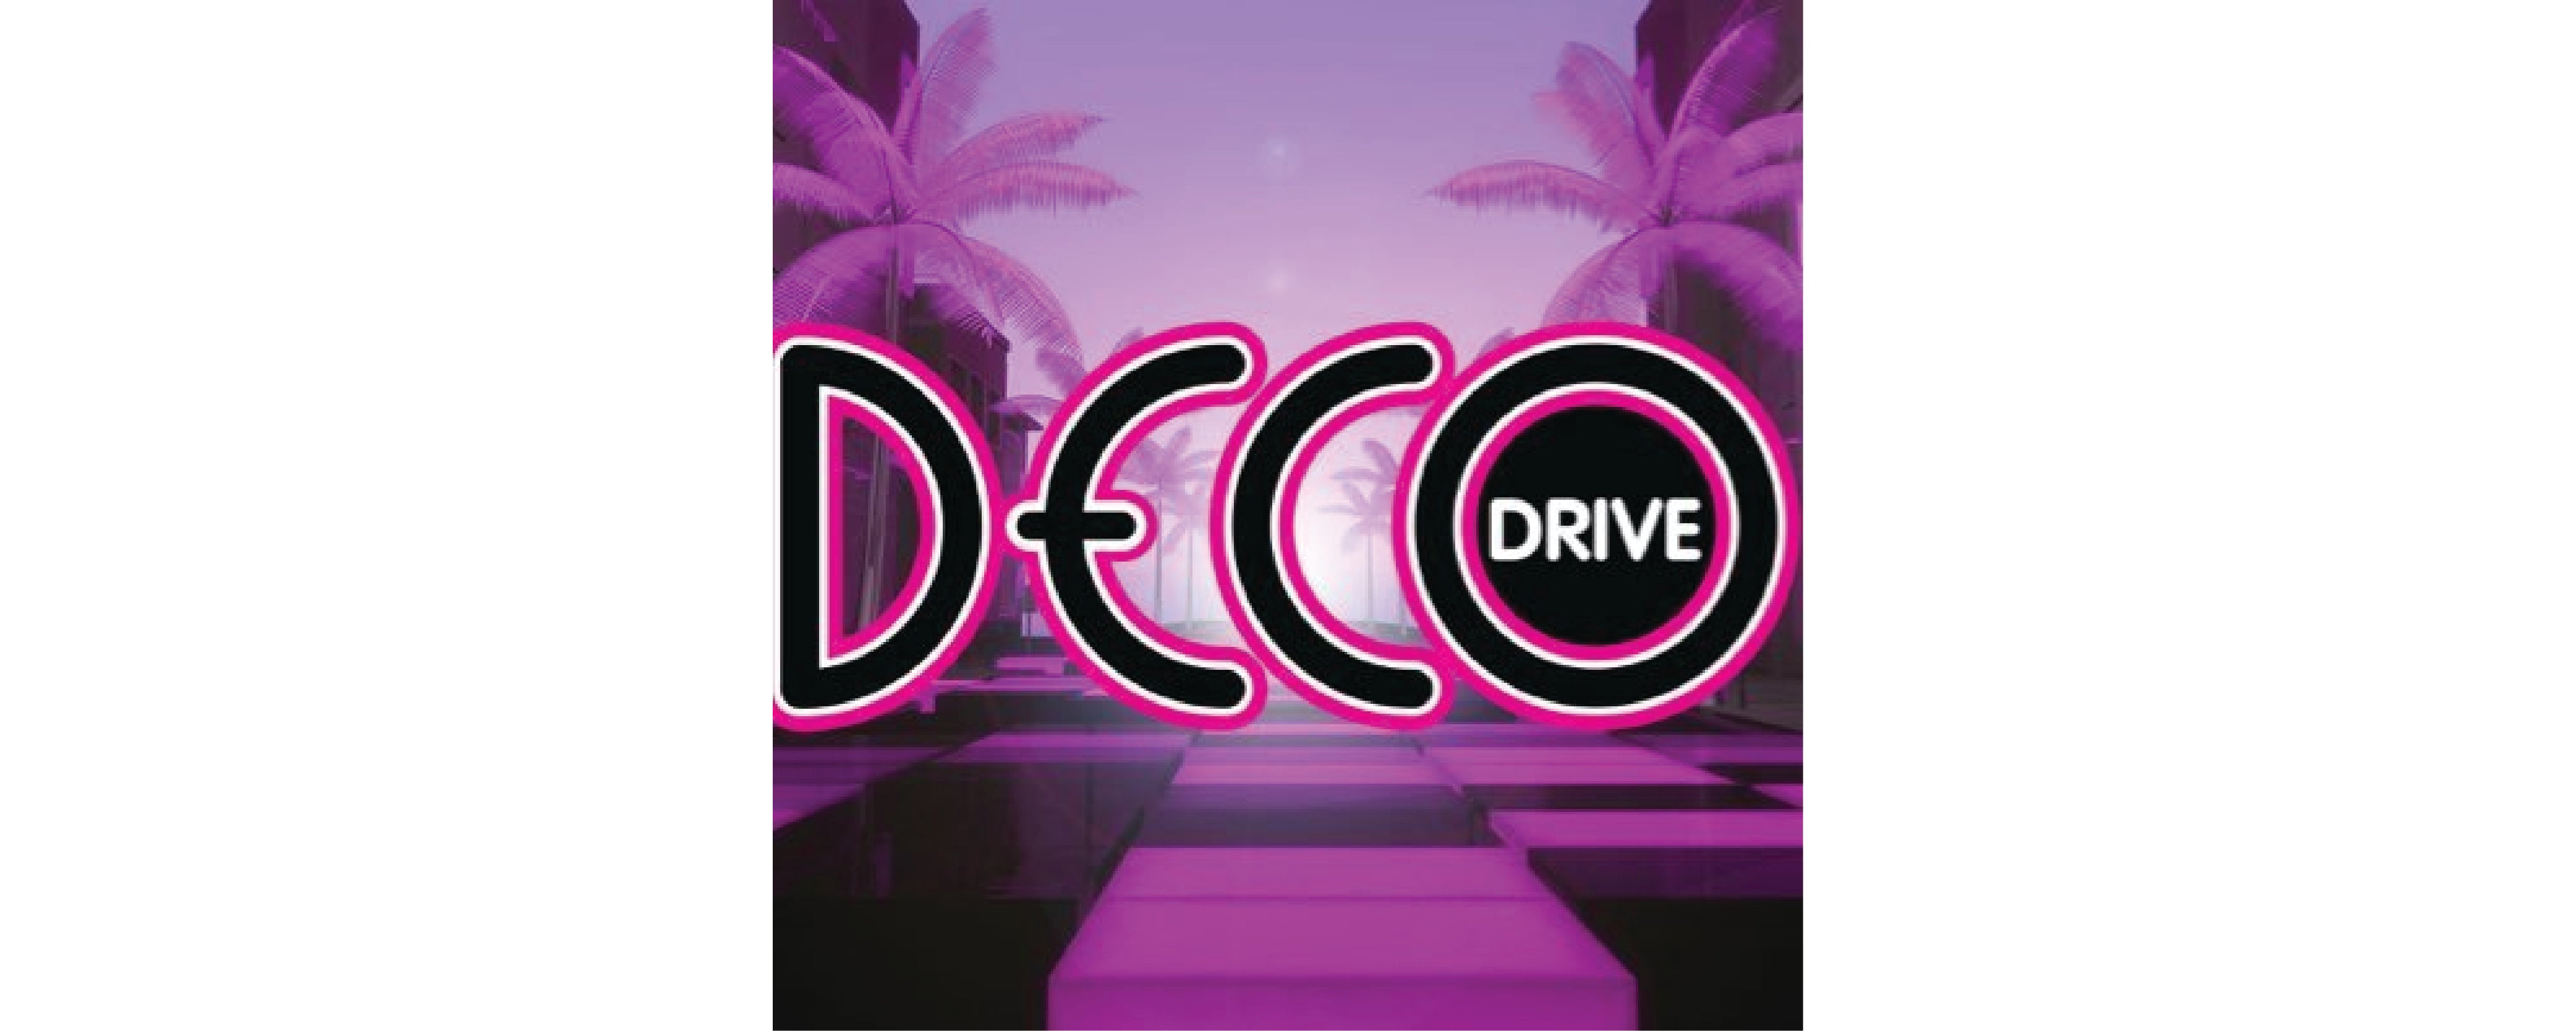 Deco Drive - Hashtag Segment